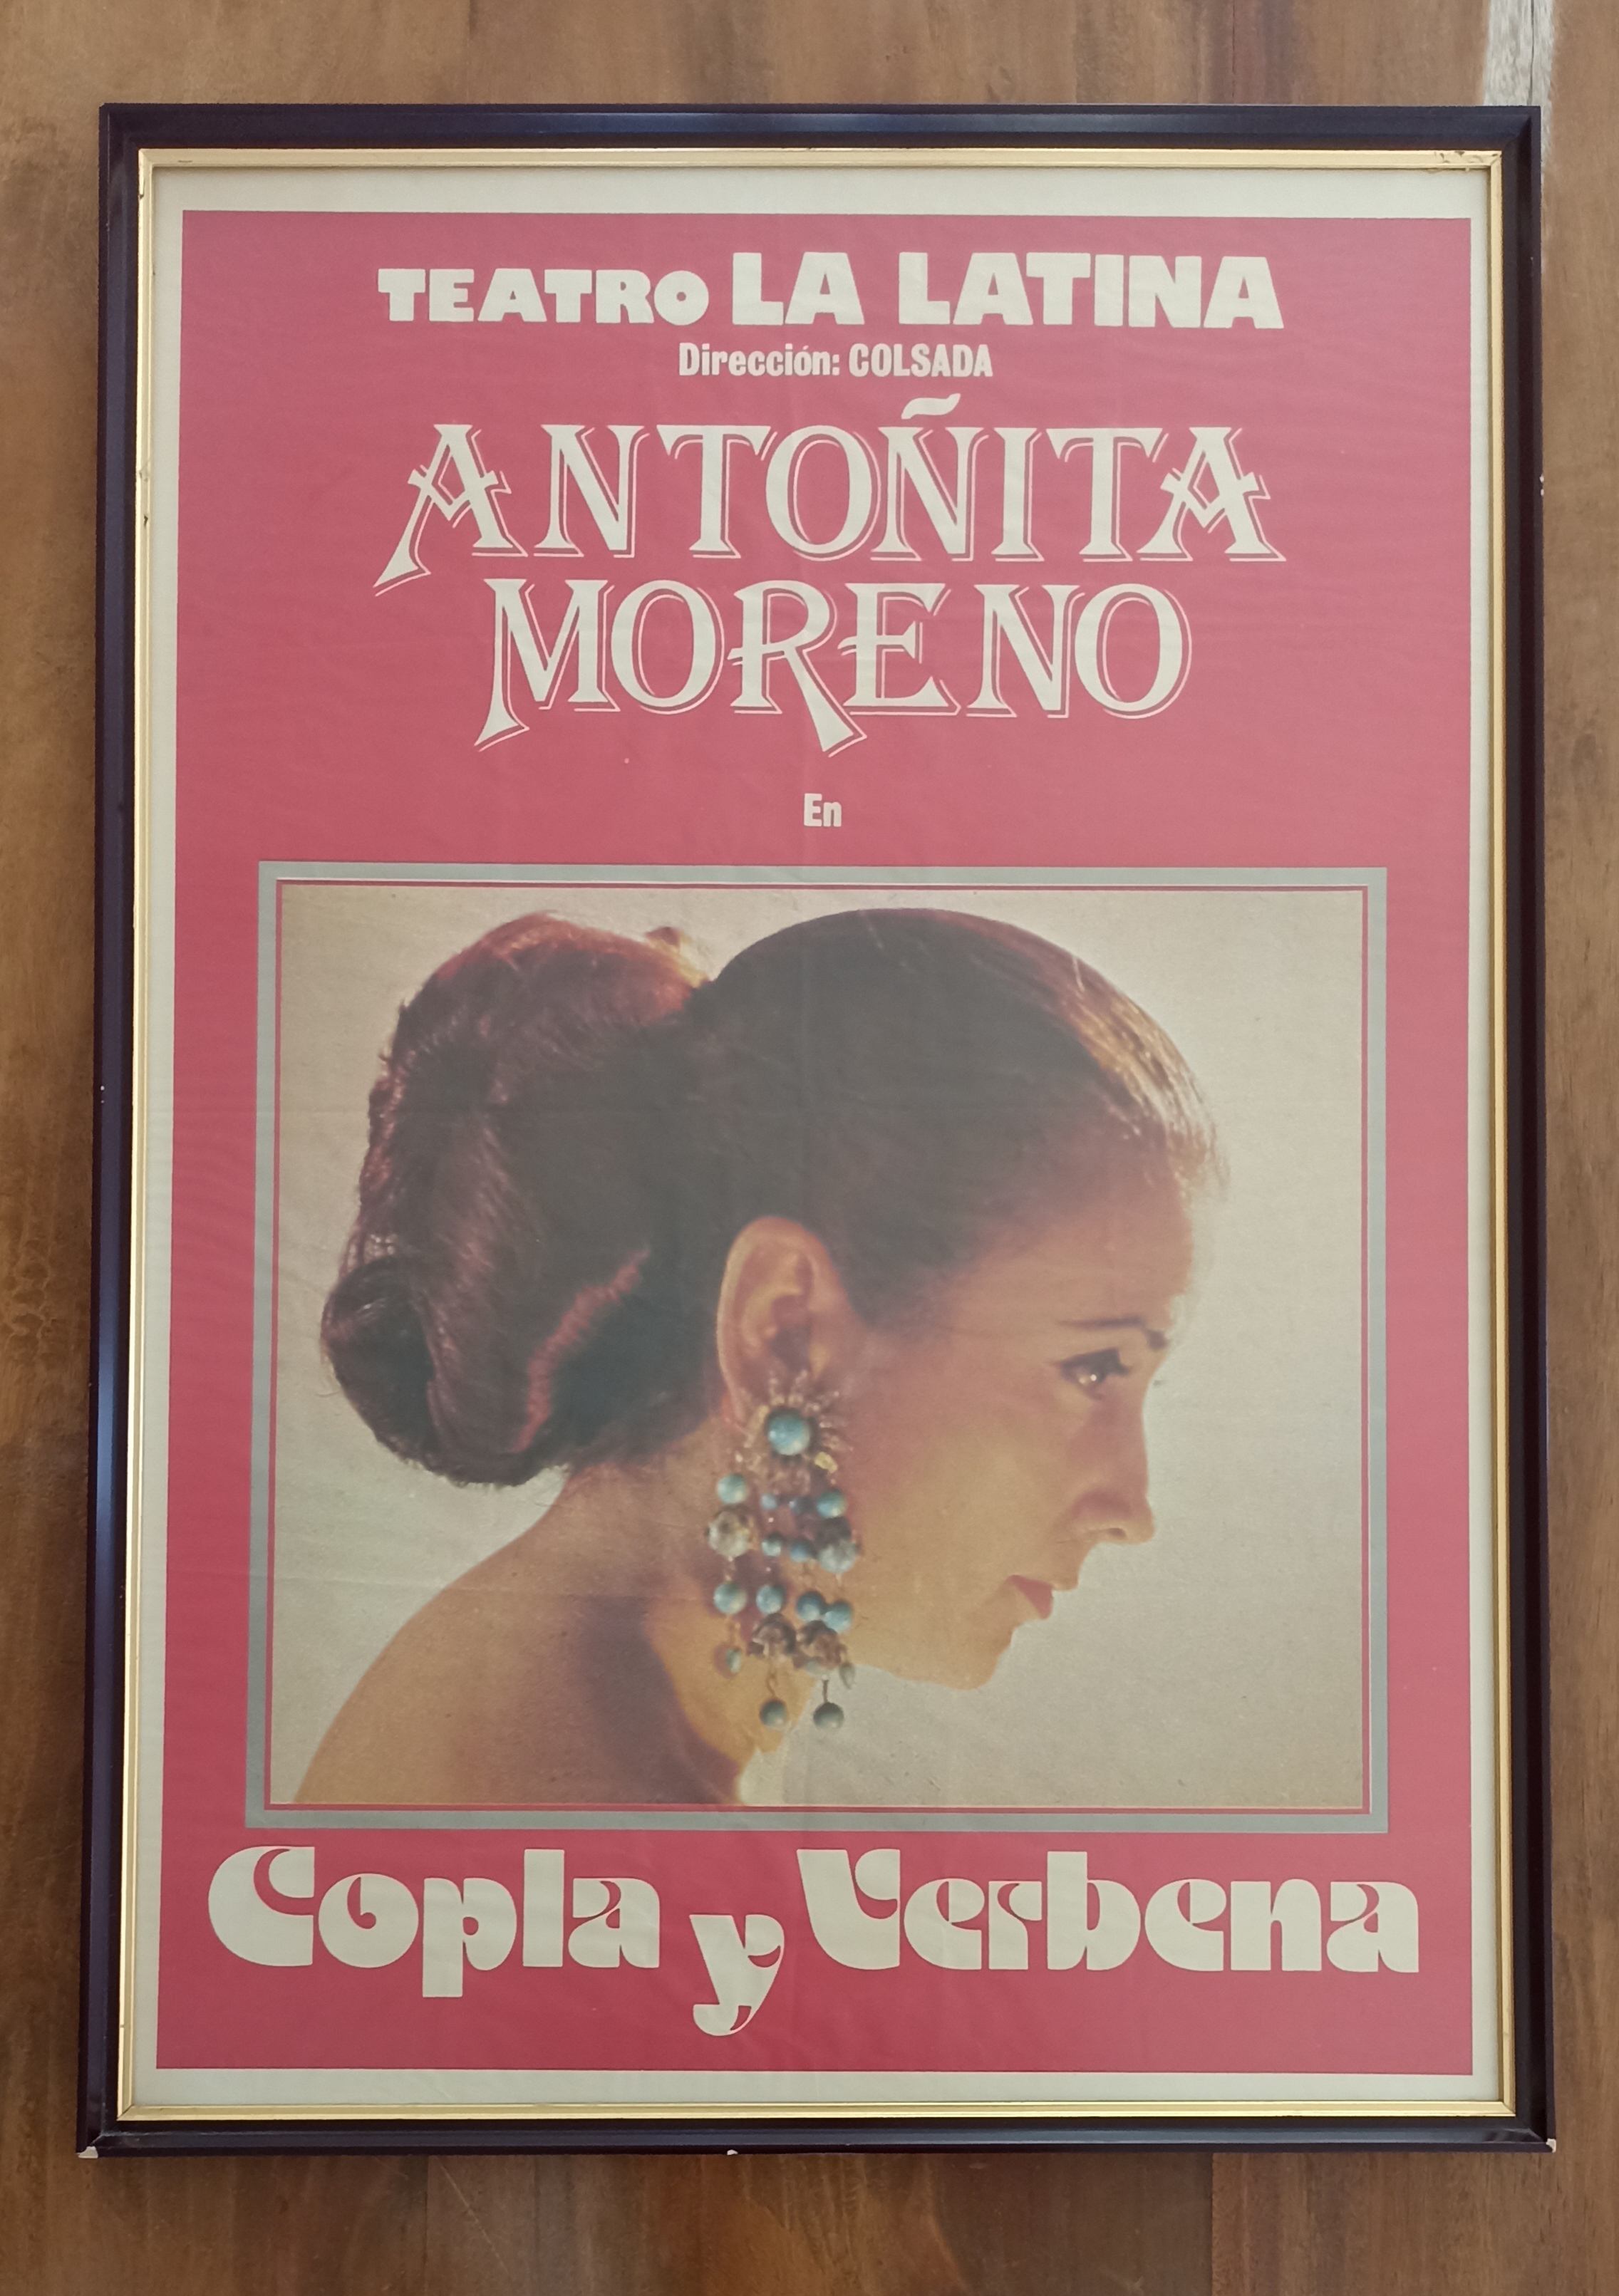 Antoñita Moreno, Copla y Verbena. Cartel (103x73 cm.) Teatro La Latina, Coslada.